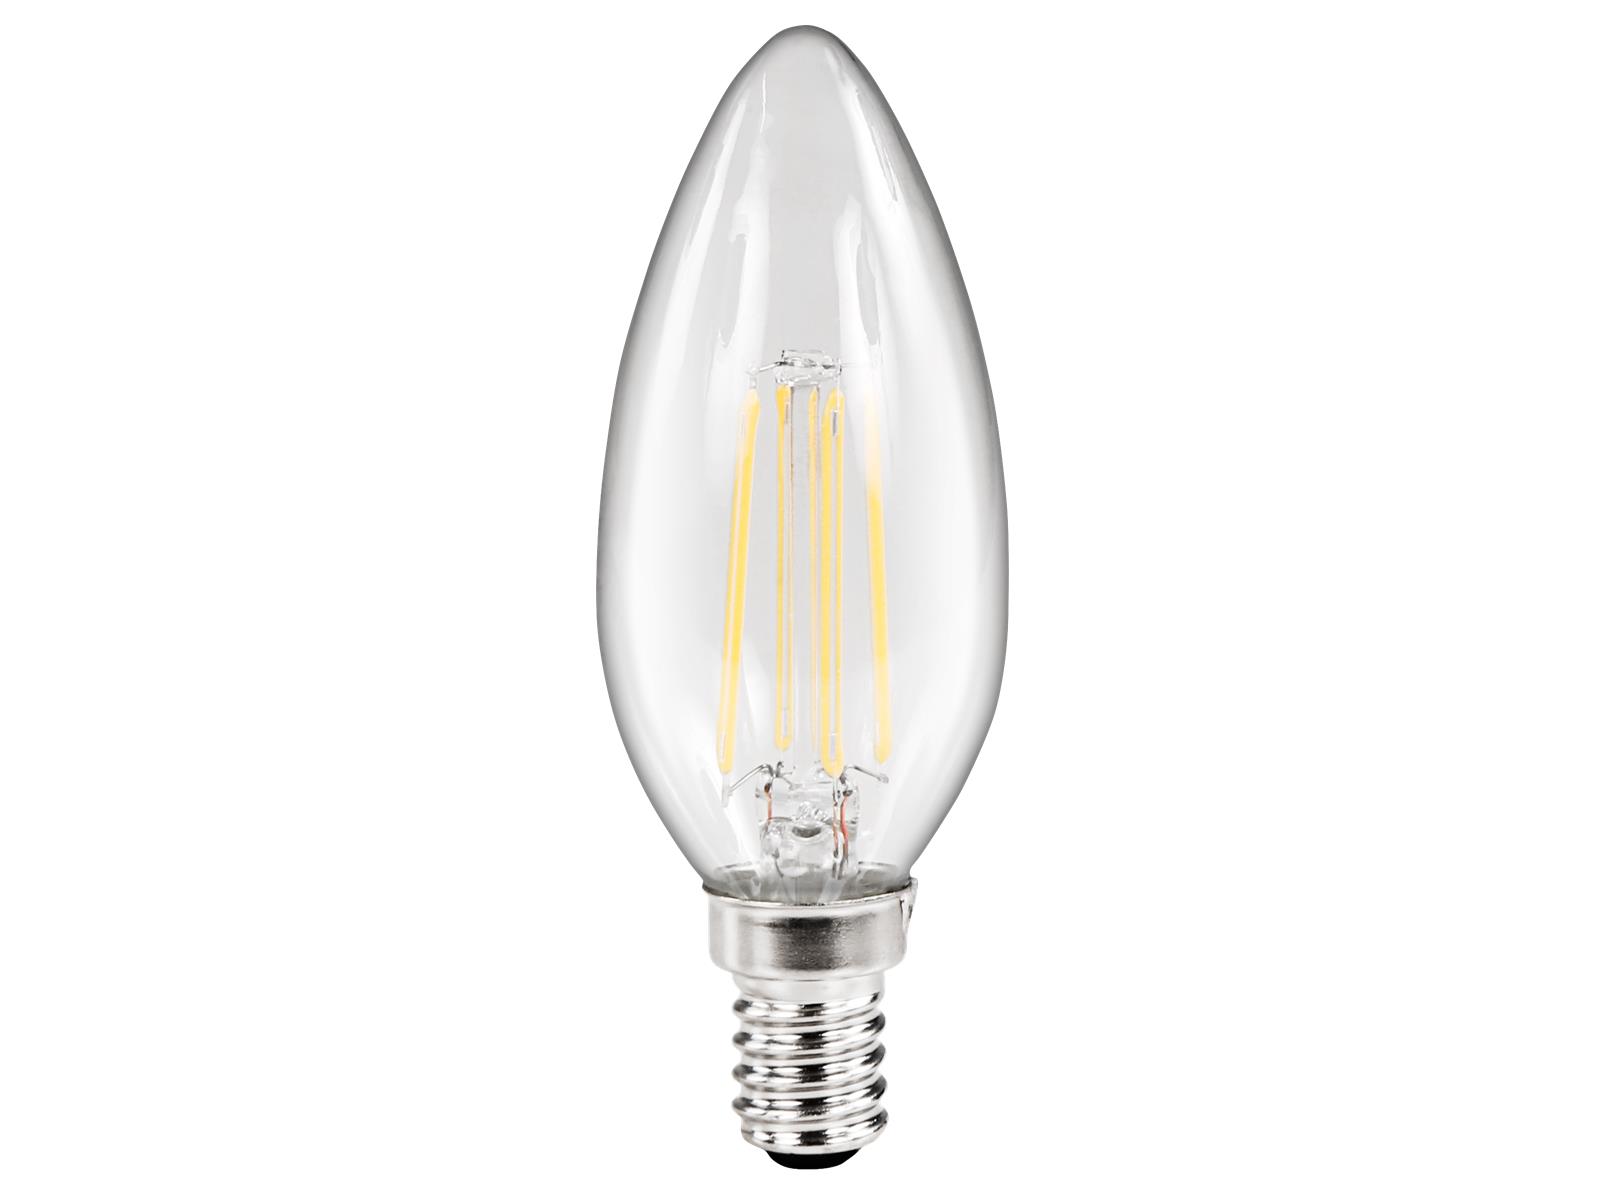 LED Filament Kerzenlampe McShine ''Filed'', E14, 4W, 490 lm, warmweiß, klar